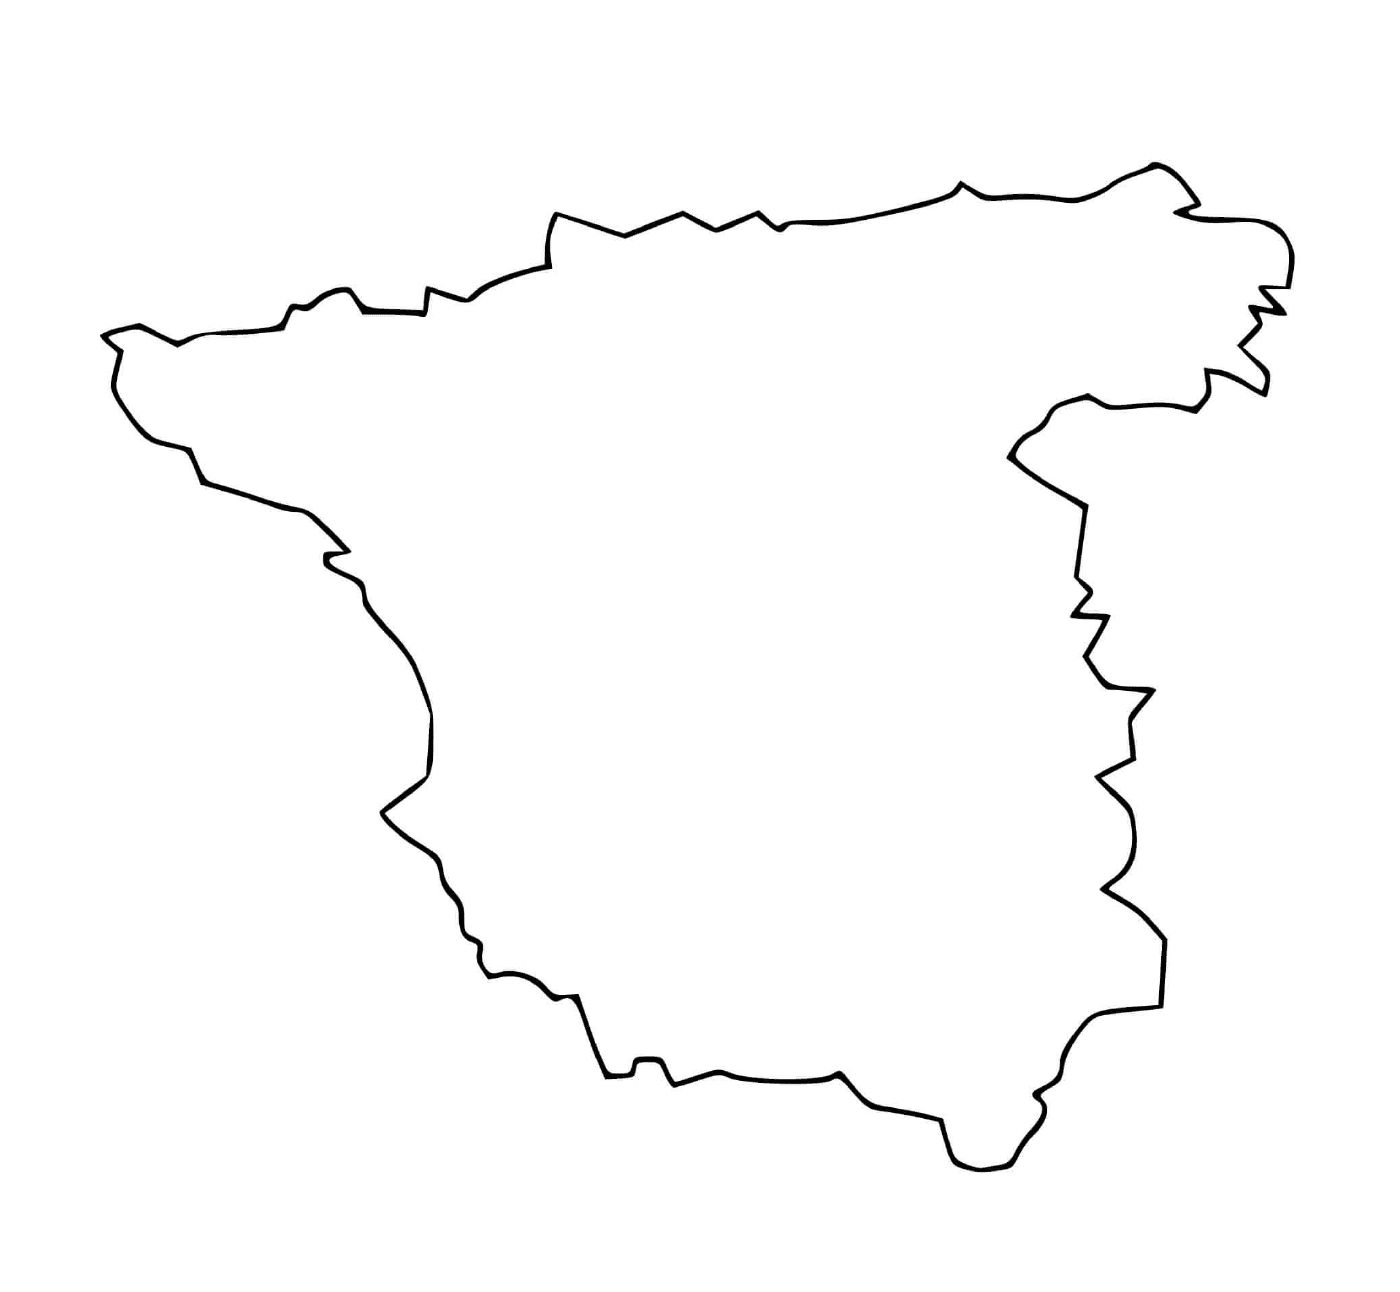  Mappa dell'Europa meridionale con la Spagna 